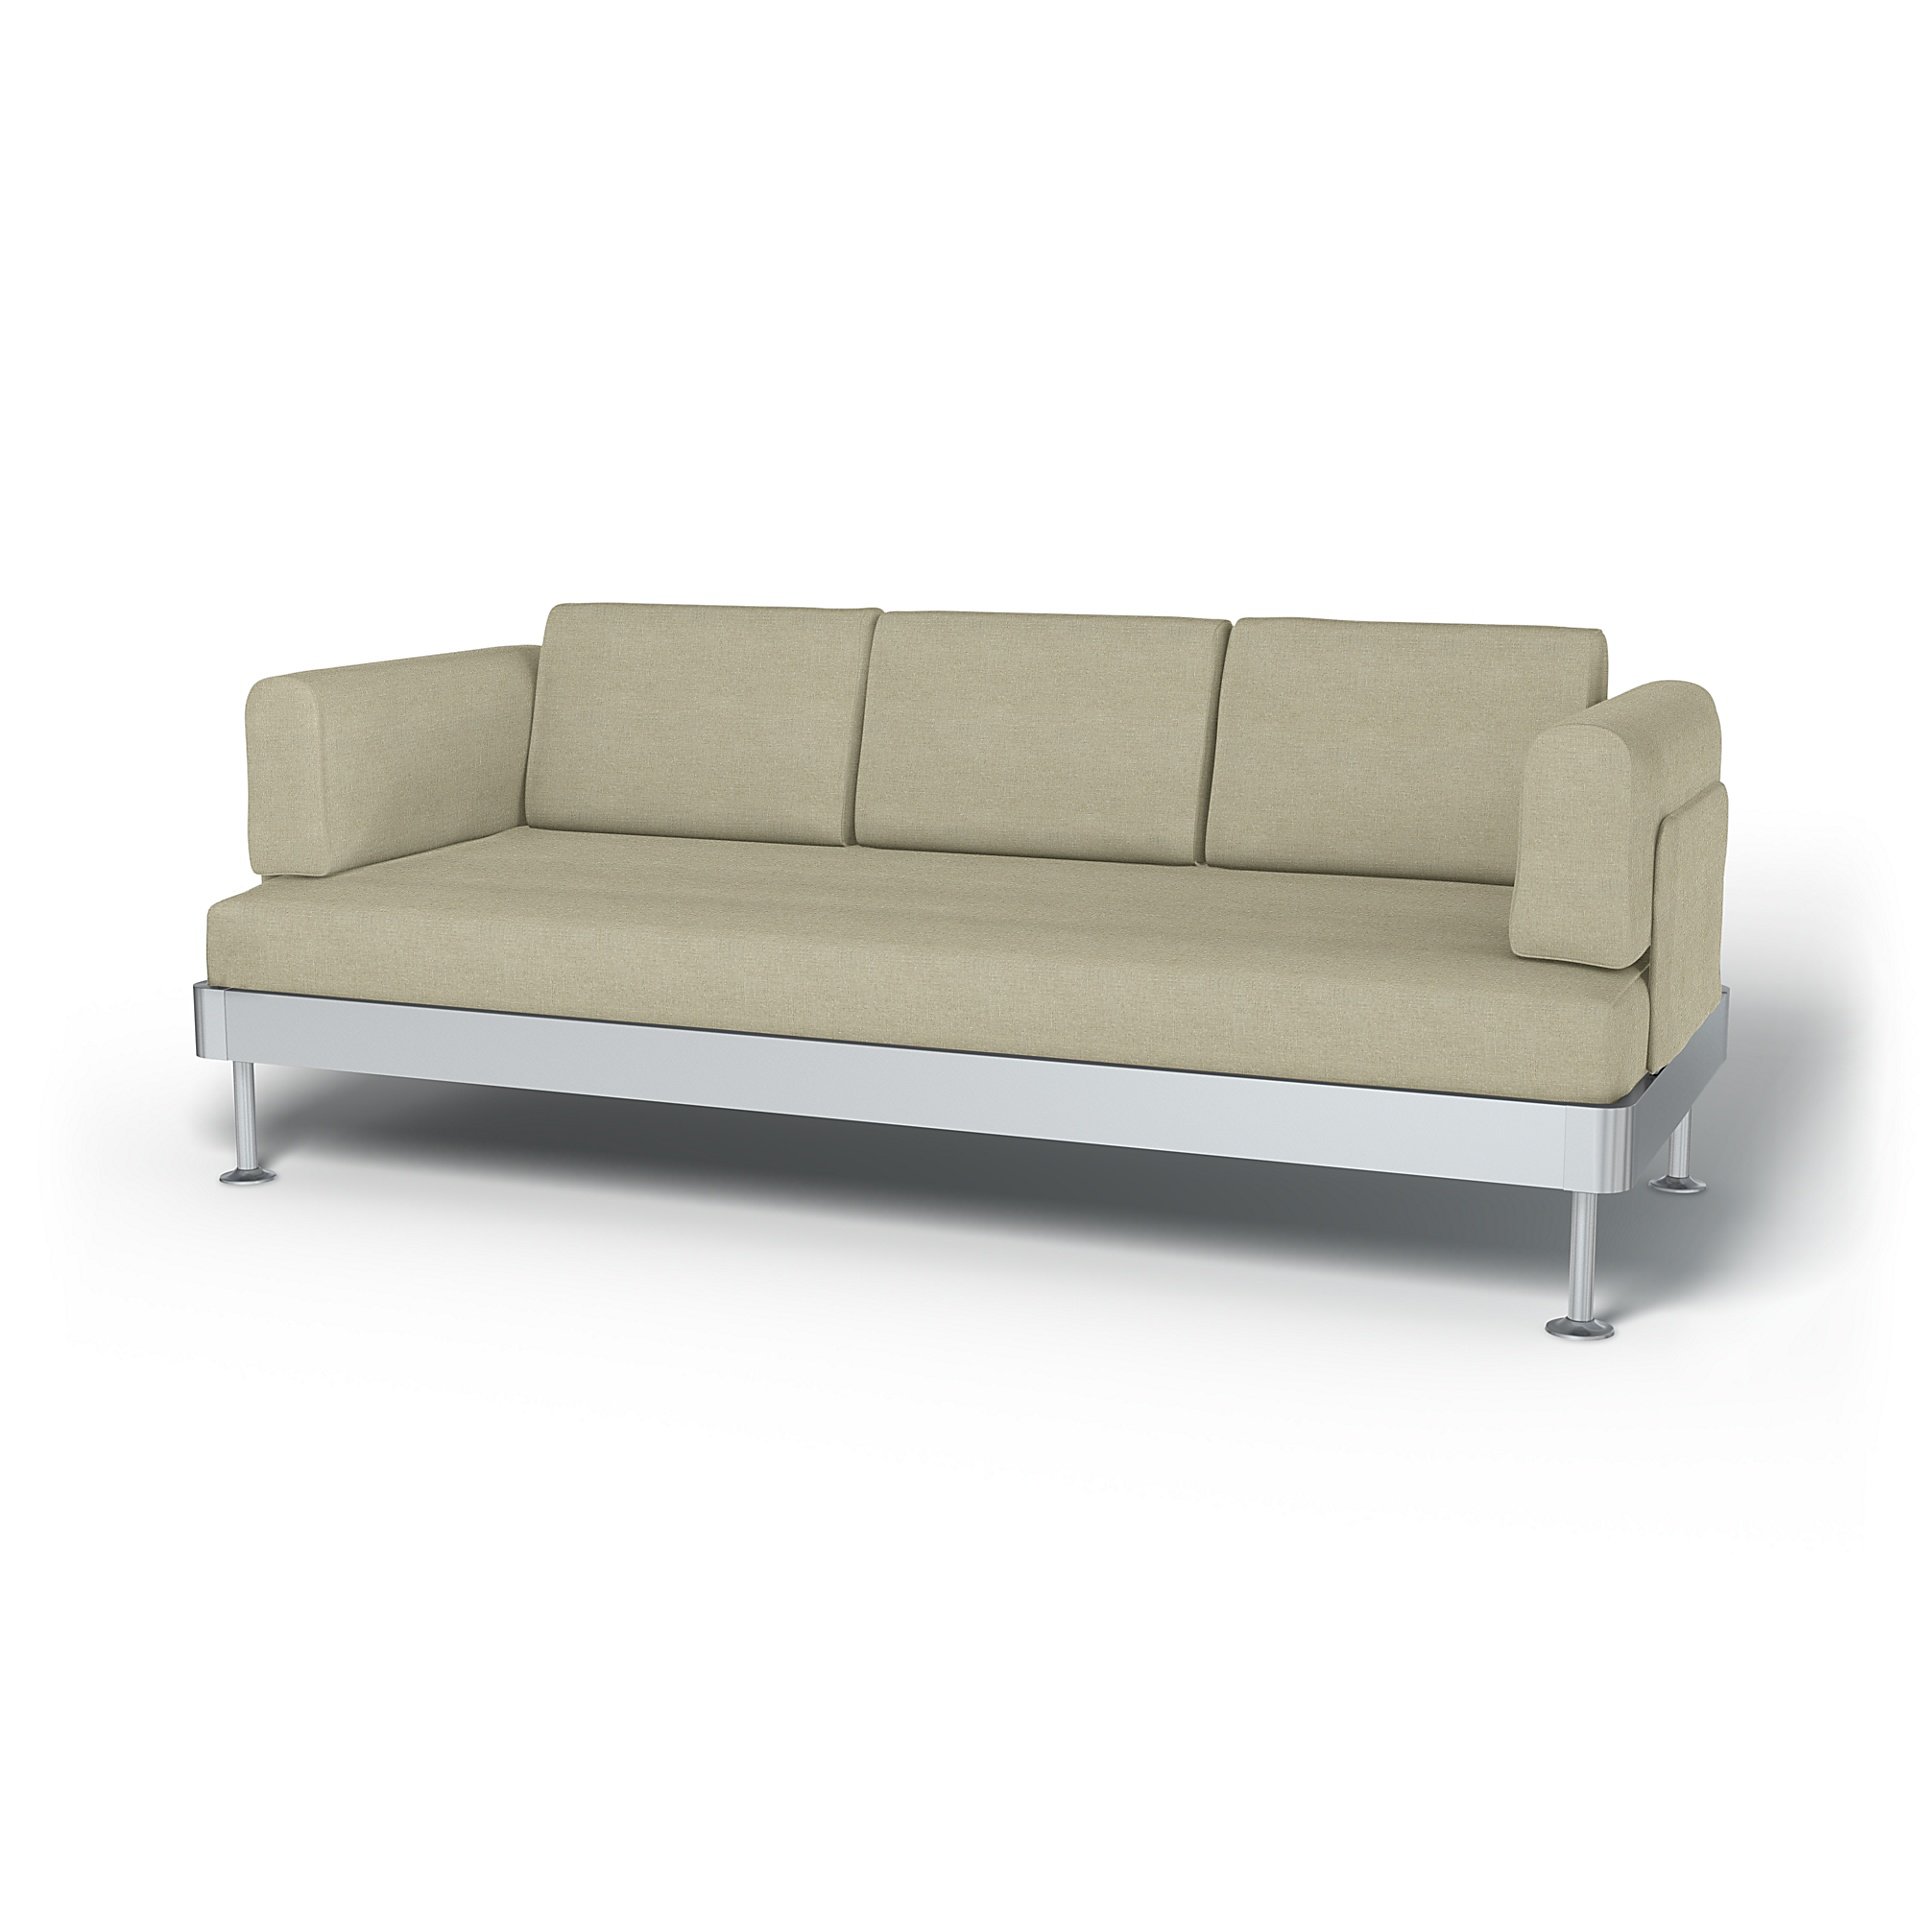 IKEA - Delaktig 3 Seater Sofa Cover, Pebble, Linen - Bemz